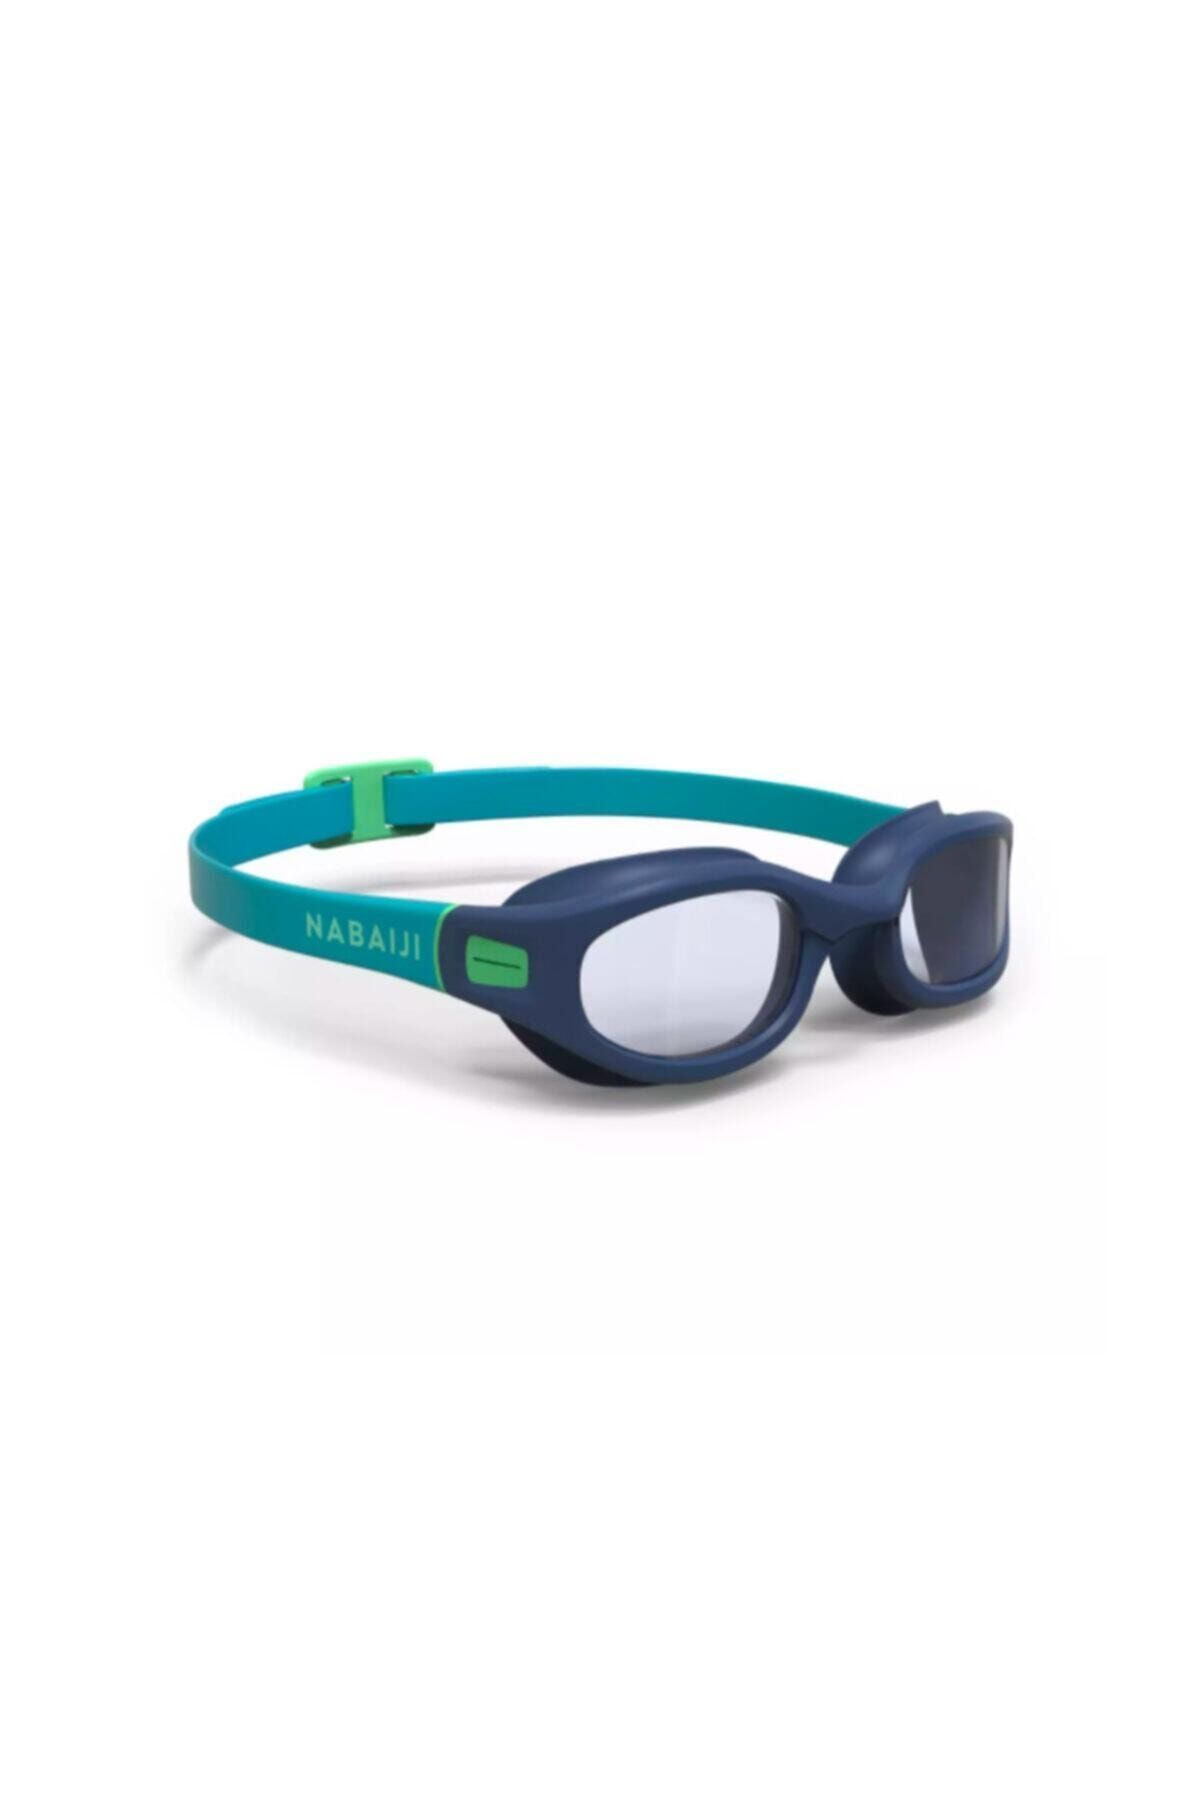 Decathlon - Yetişkin Deniz Gözlüğü Yüzücü Gözlüğü Mavi Yeşil Şeffaf Camlar L Boy Soft